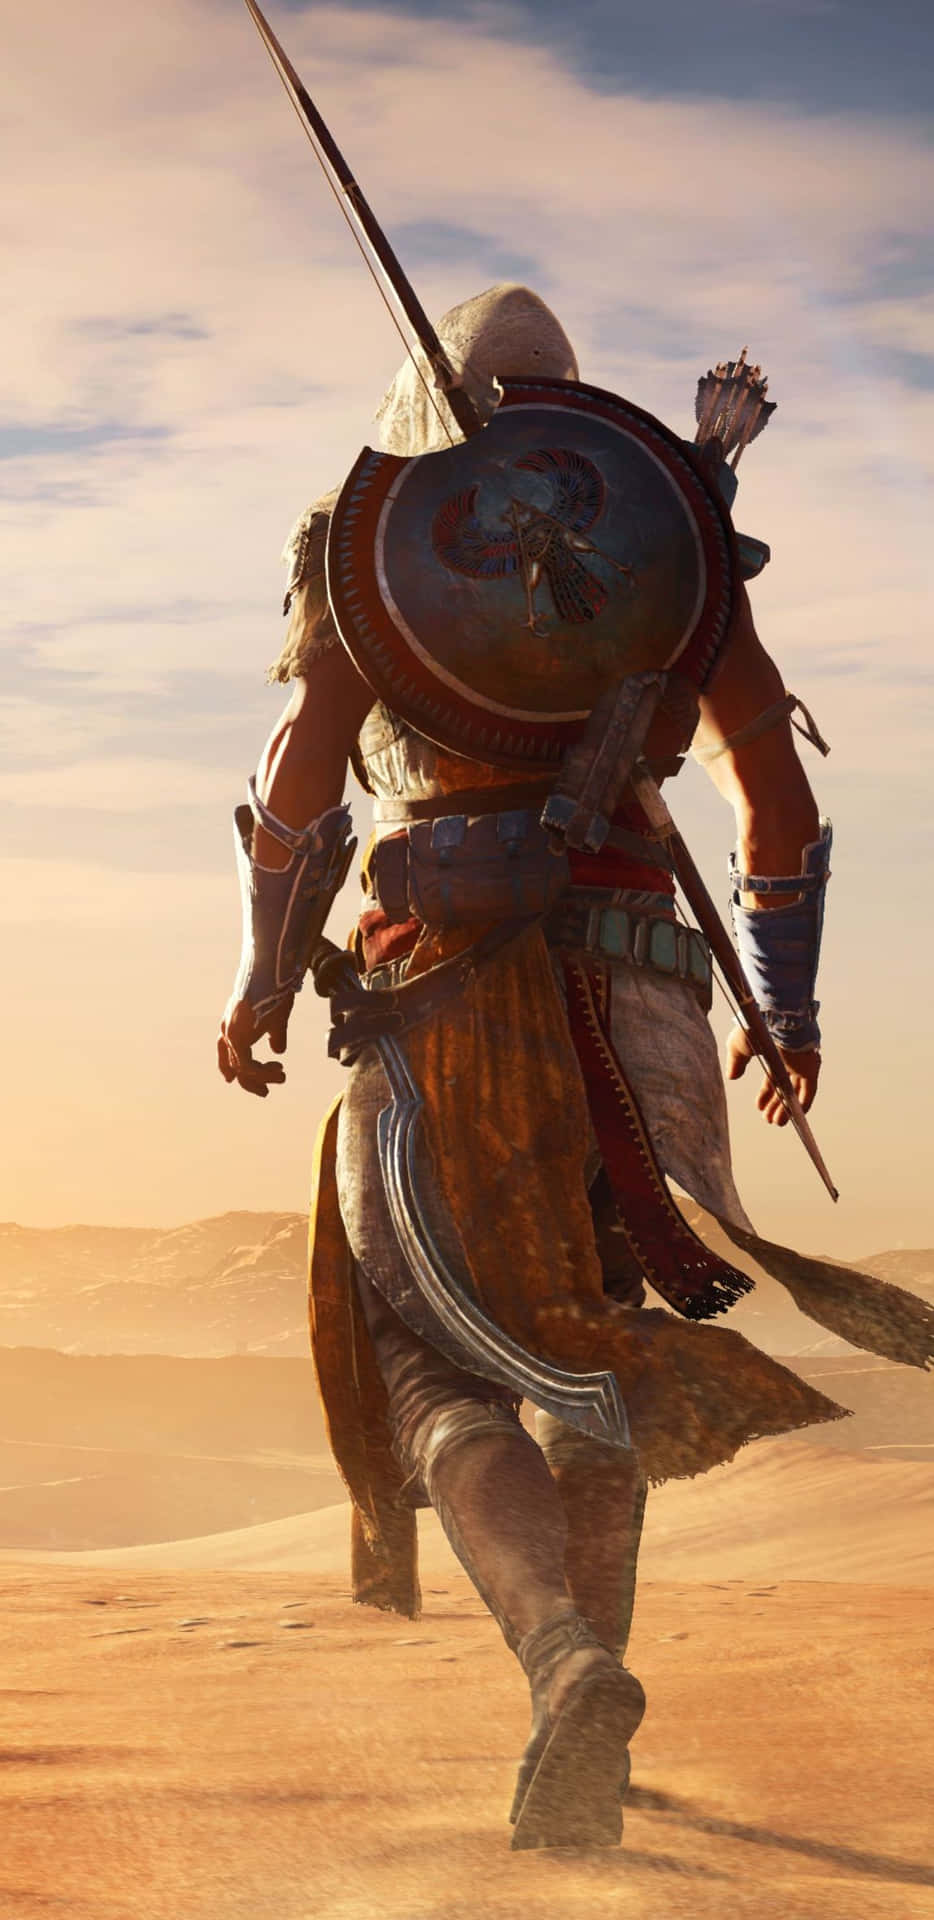 Dettagliintricati Di Assassin's Creed Origins Mostrati Sullo Schermo Del Pixel 3xl.